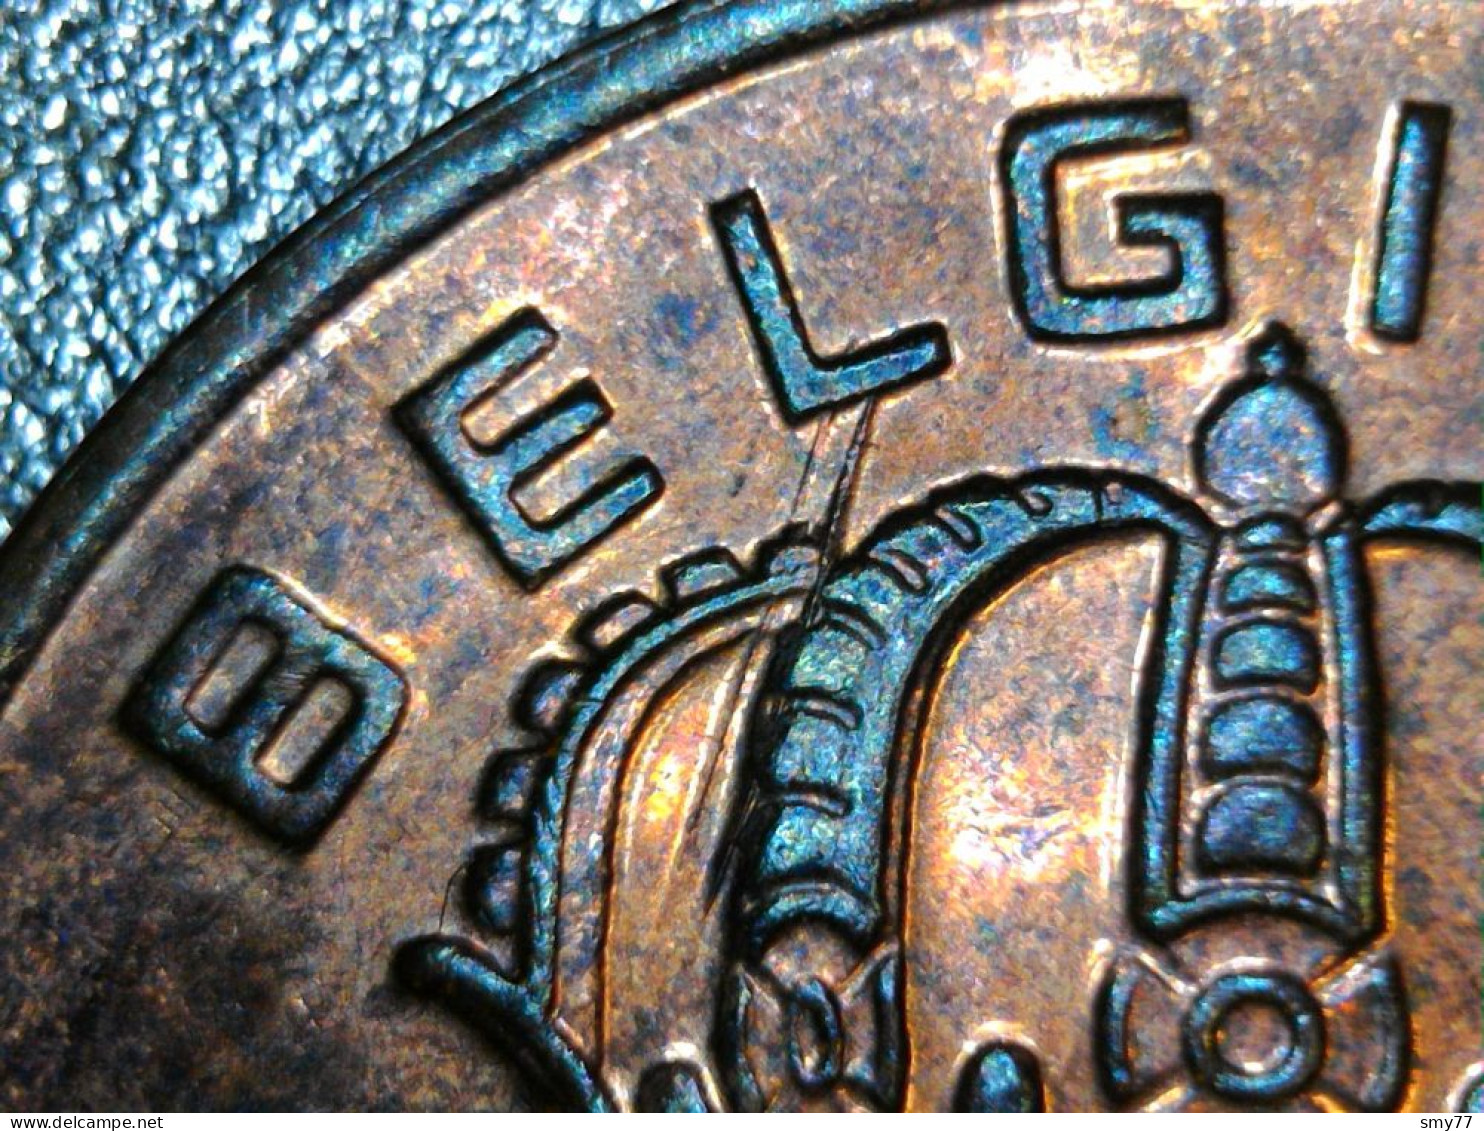 Belgique / Belgium ► Fautées - Error coins ◄ Lot 15x • See / voir détails & photos • [24-554]